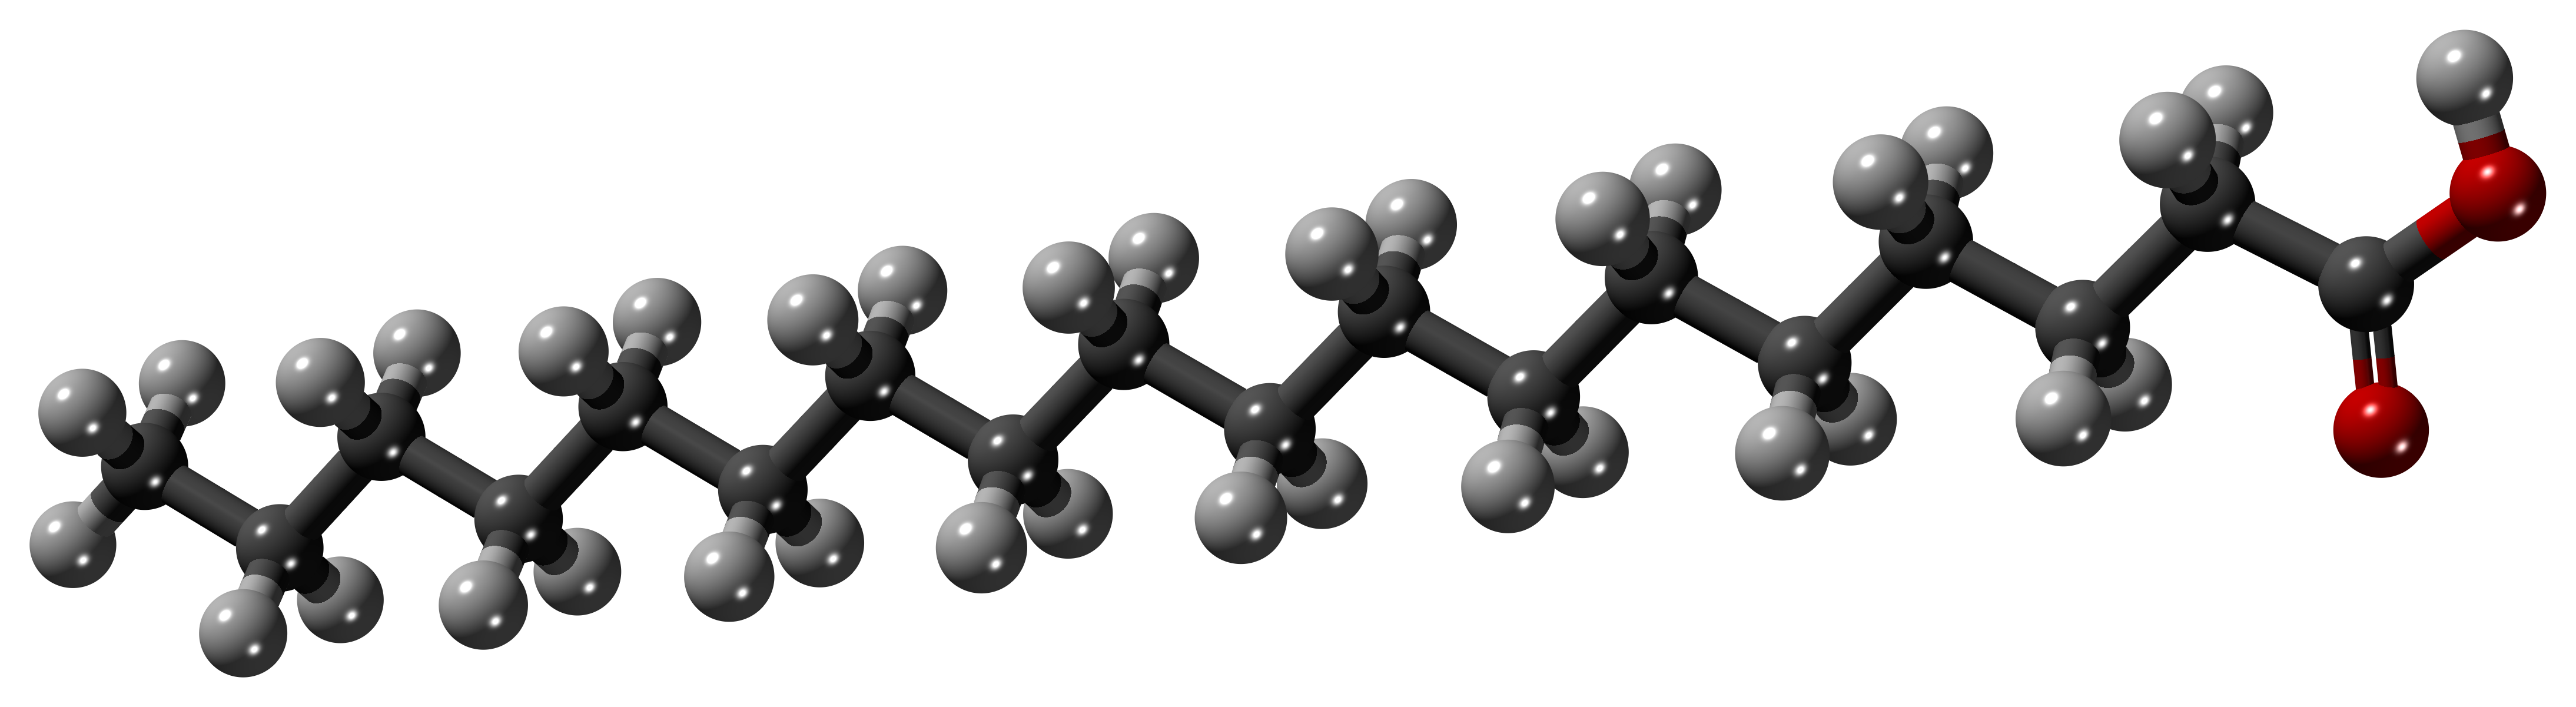 Стеариновая кислота молекулярная